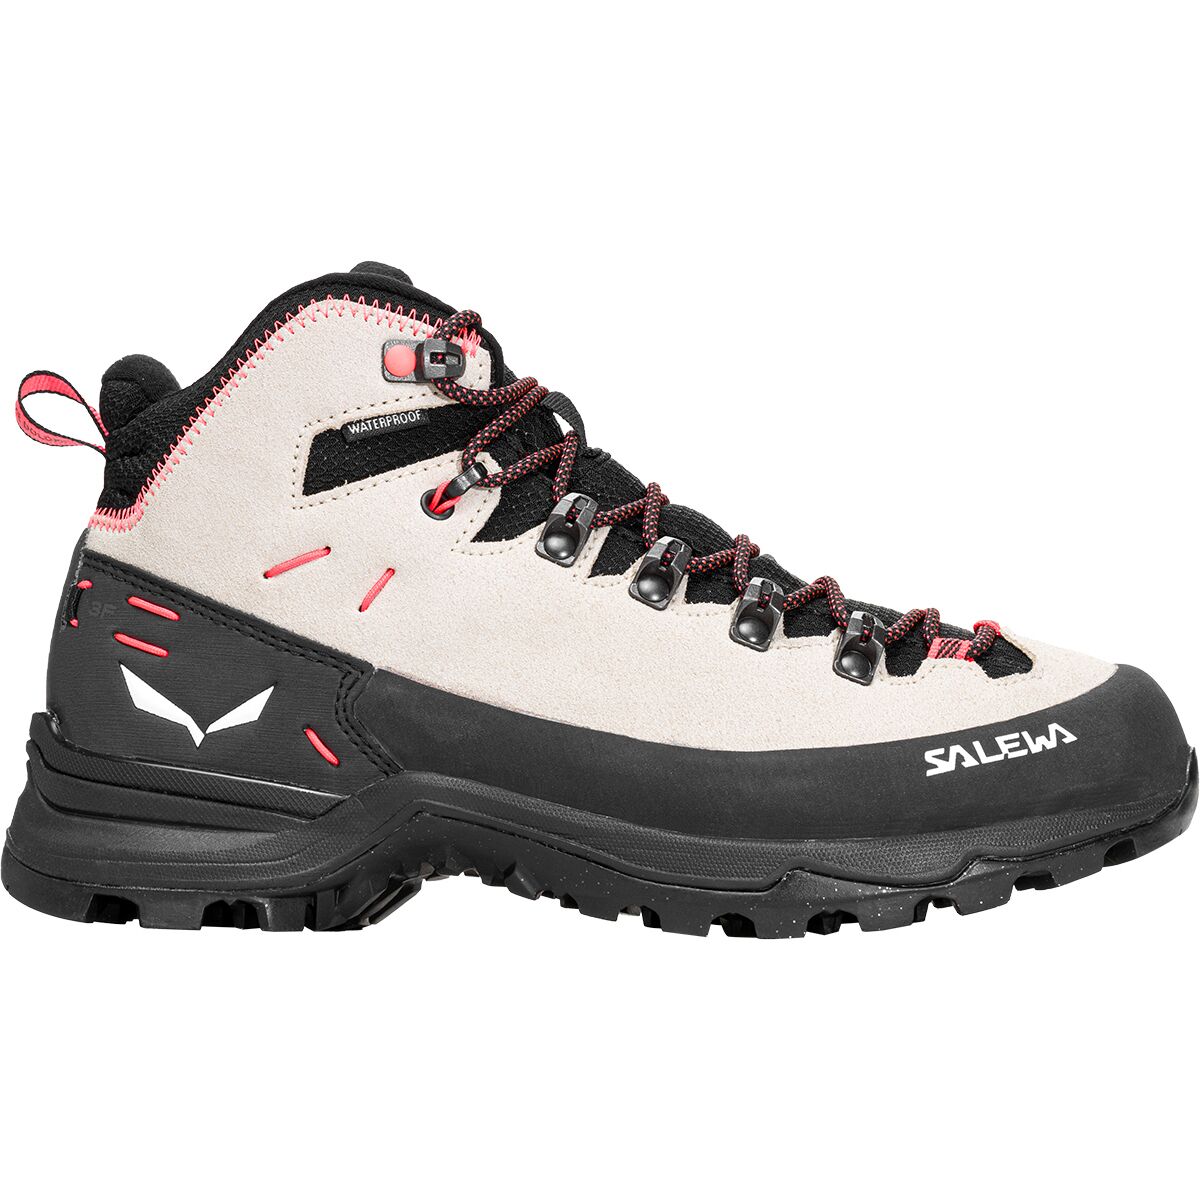 Salewa Alp Mate Winter Mid WP Hiking Boot - Women's - Footwear